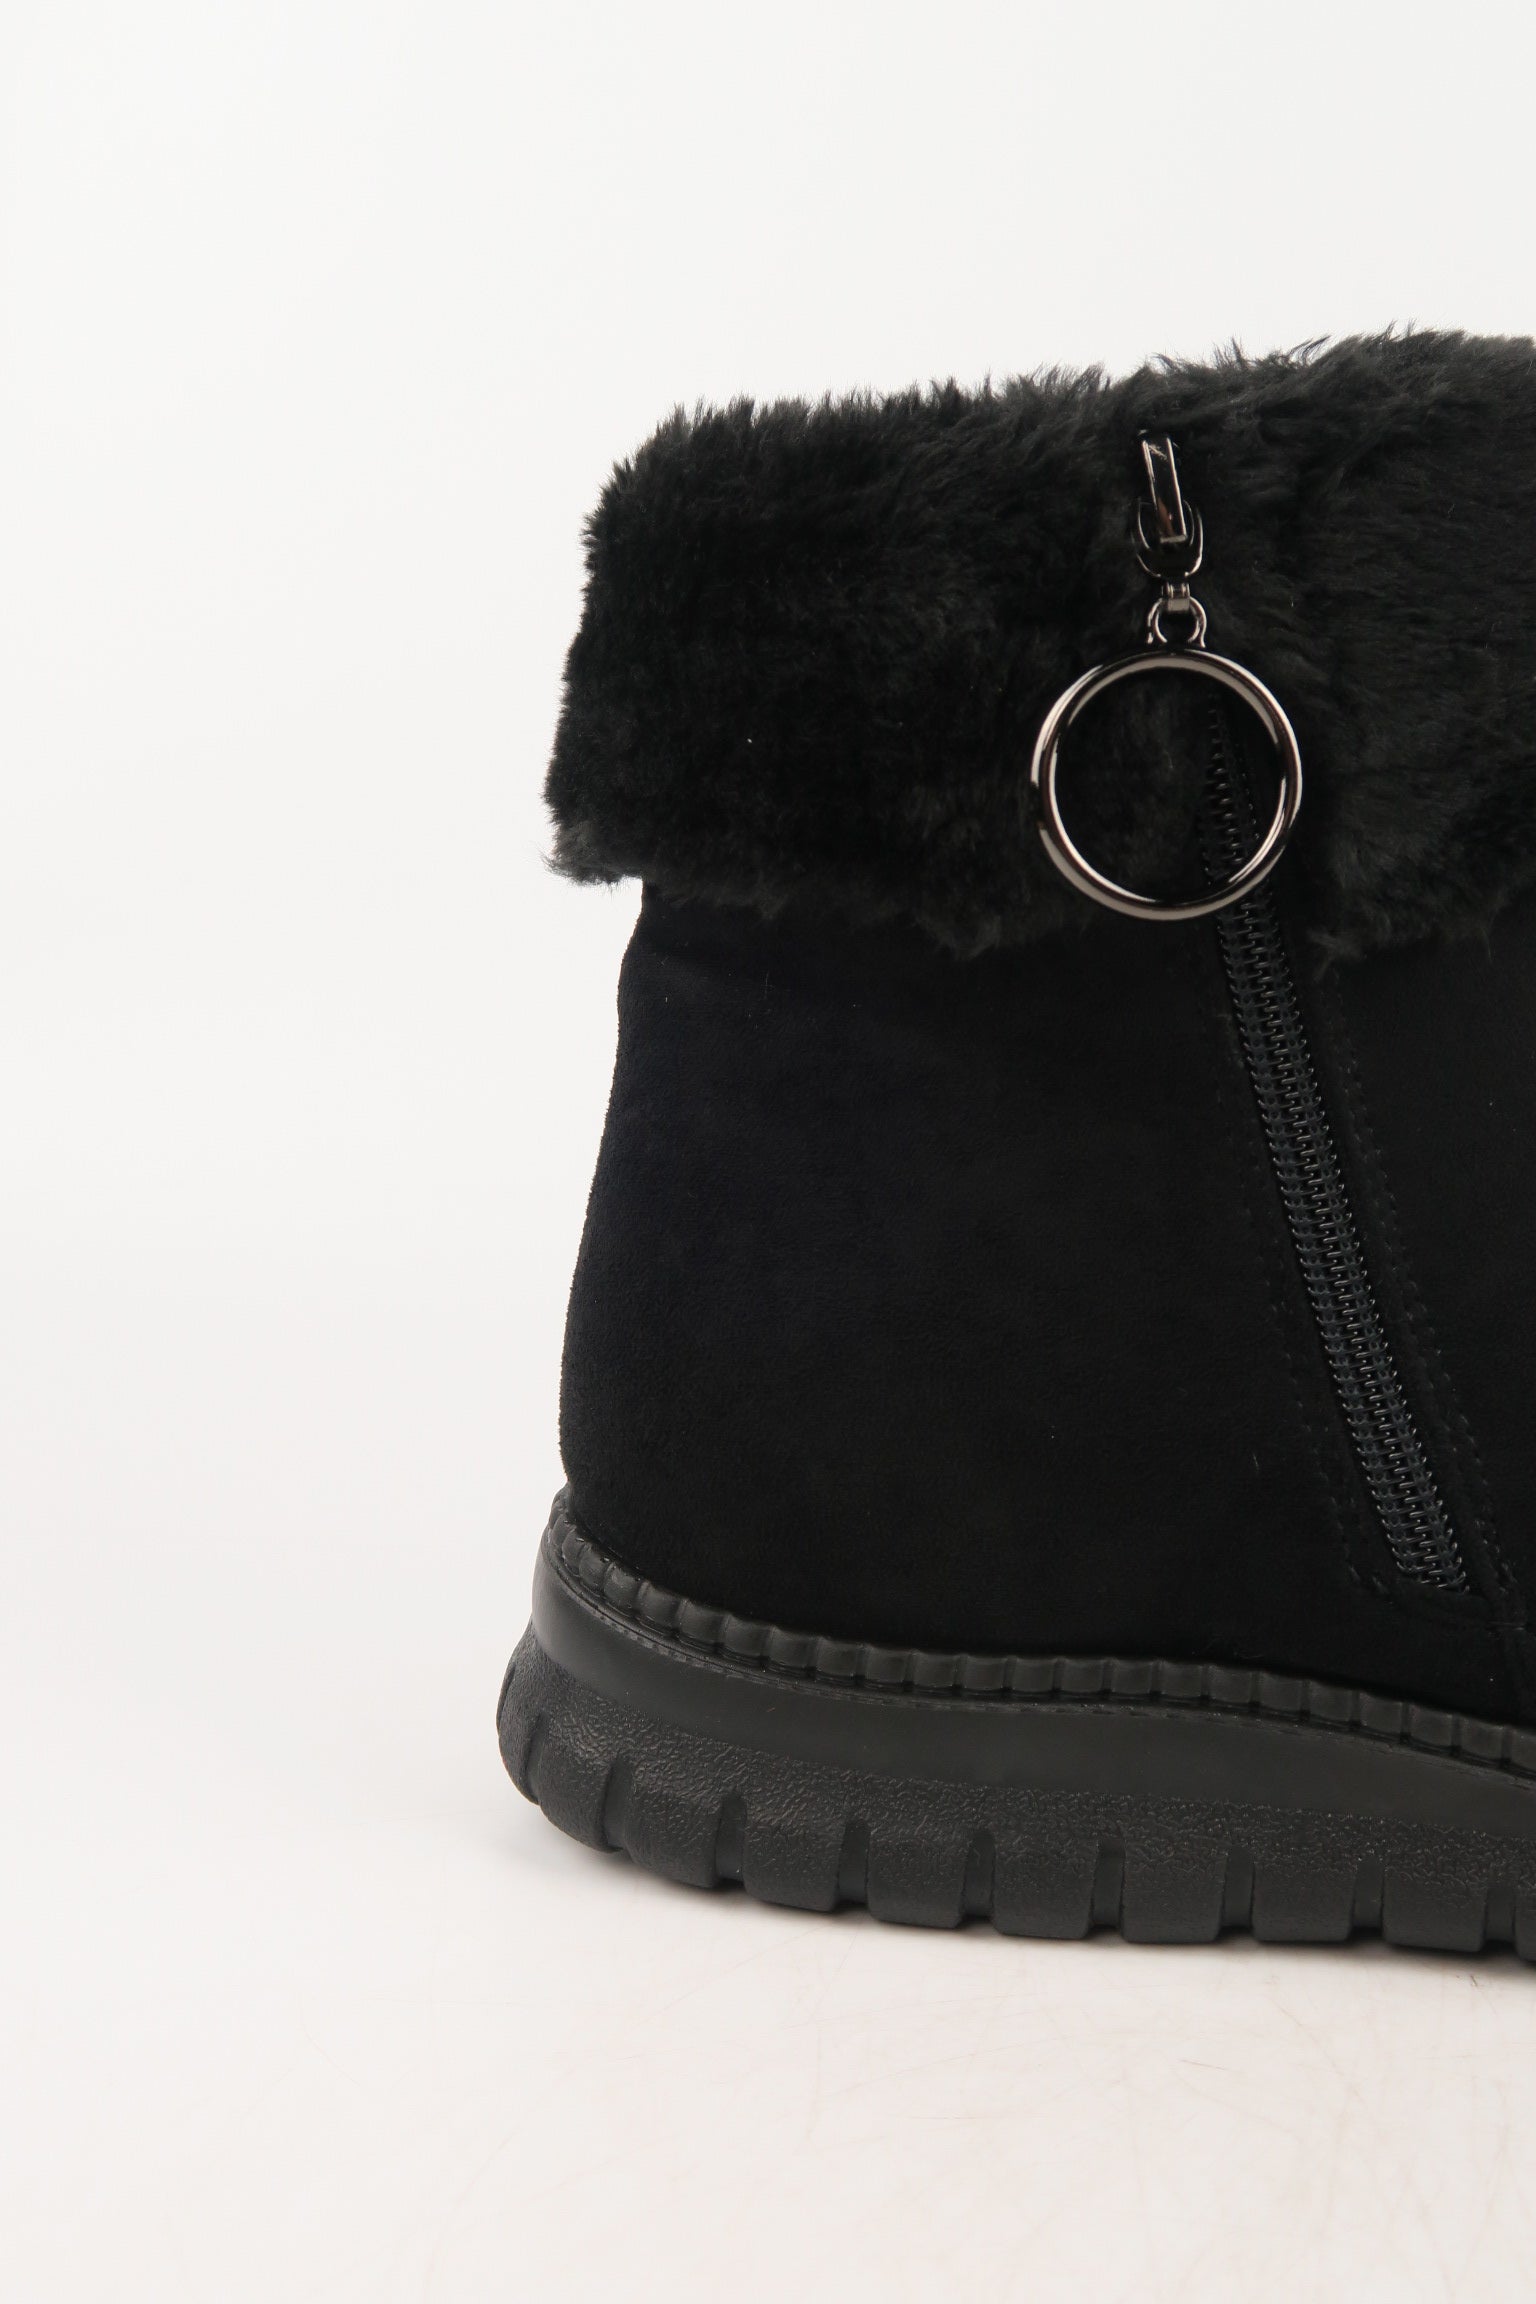 รองเท้าบูทหนังกำมะหยี่ แต่งขนเฟอร์ no.80223-10 - Winter Boots Minus The Fur Lining On The Inside